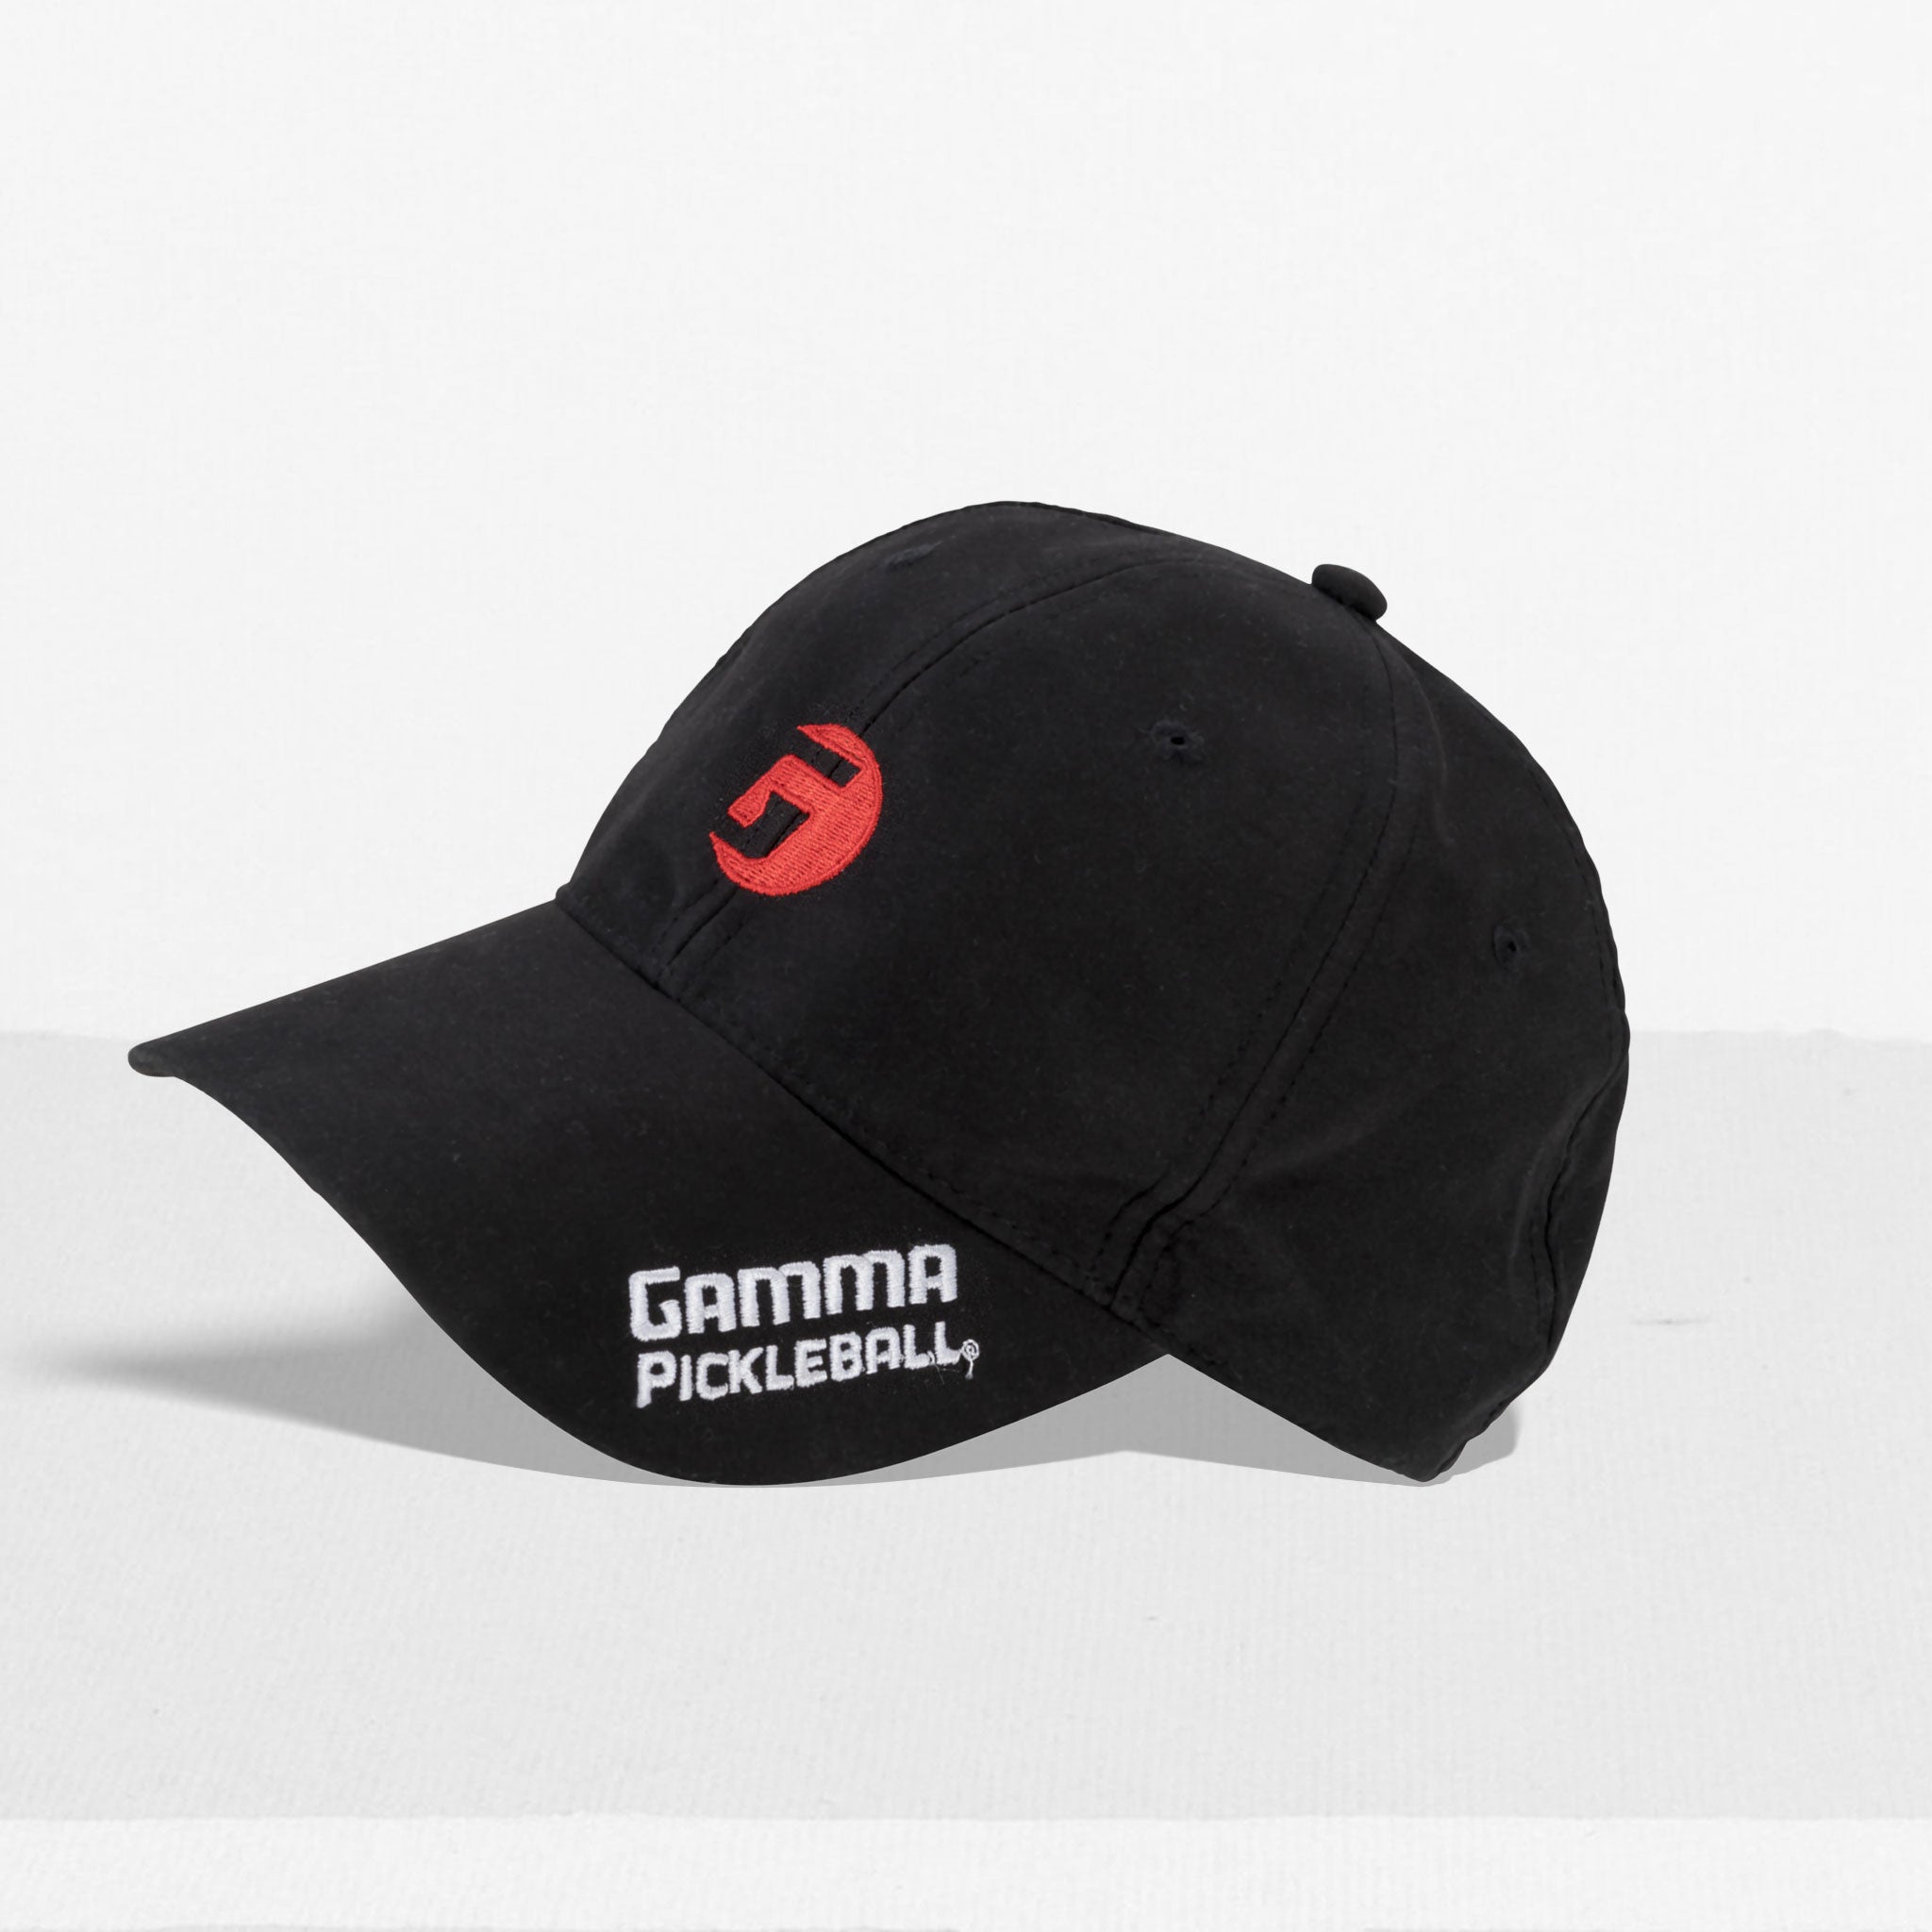 http://www.gammasports.com/cdn/shop/products/gamma-pickleball-hats-sgplh12-619930.jpg?v=1709750115